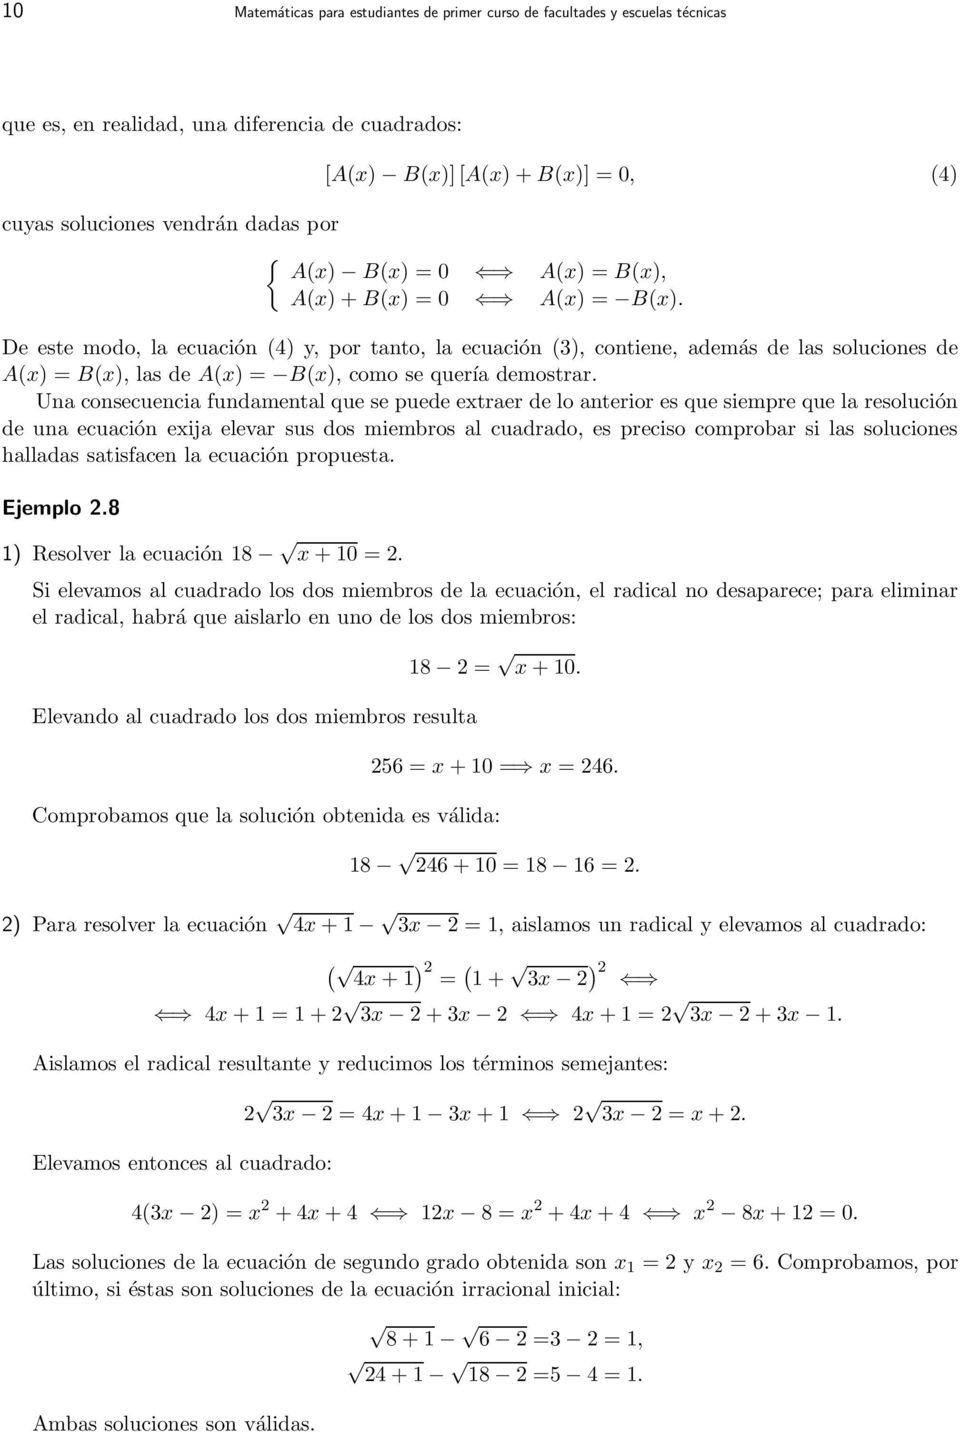 De este modo, la ecuación (4) y, por tanto, la ecuación (3), contiene, además de las soluciones de A(x) = B(x), las de A(x) = B(x), como se quería demostrar.